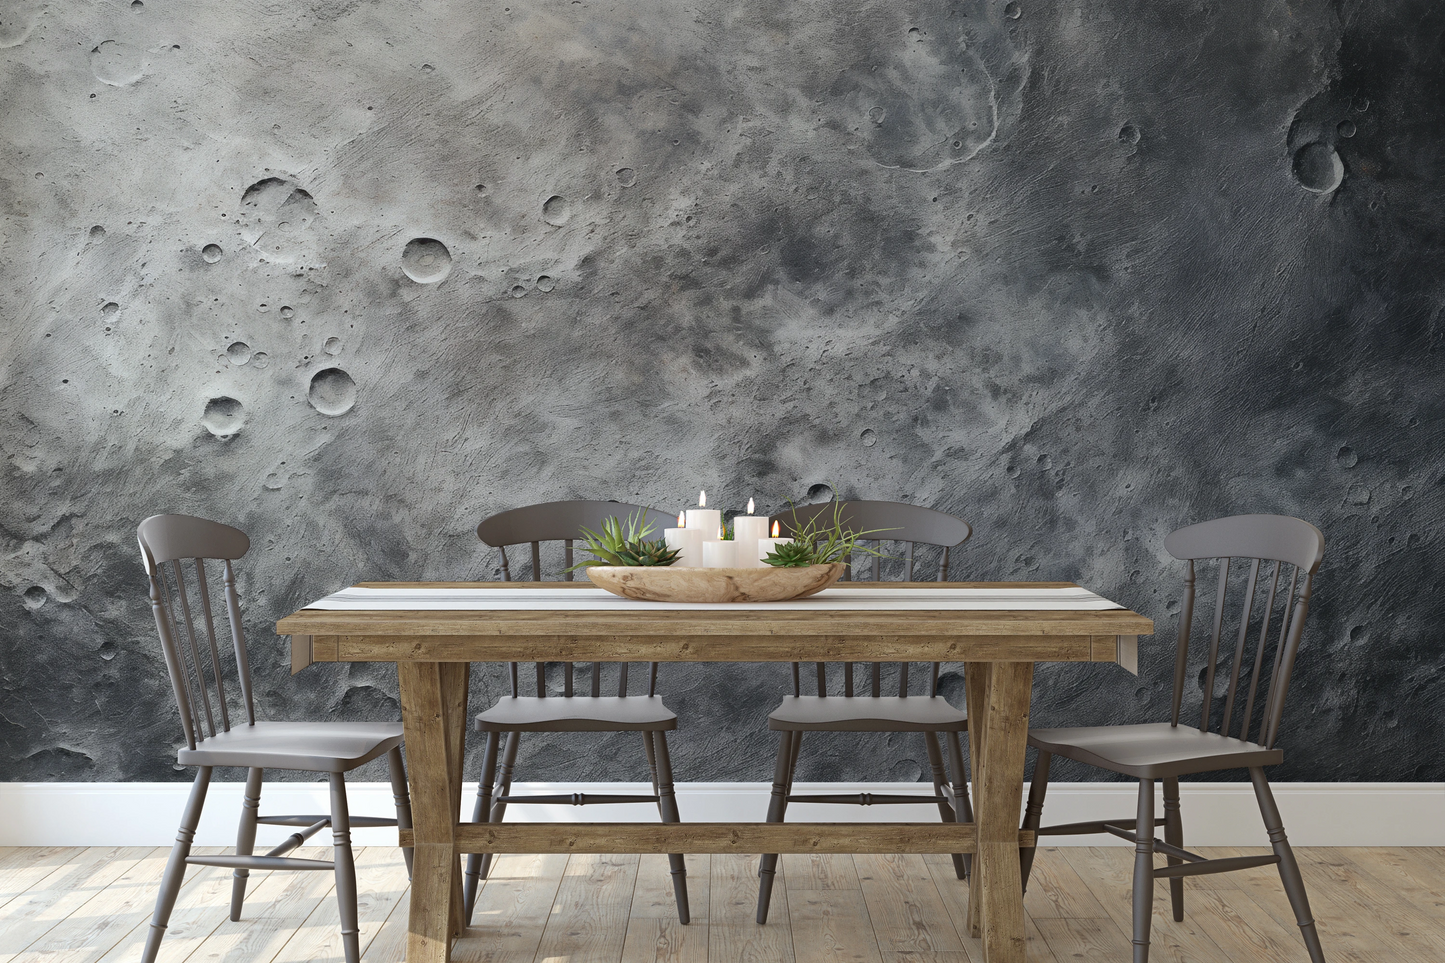 Fototapeta malowana o nazwie Moon's Tranquility #2 pokazana w aranżacji wnętrza.